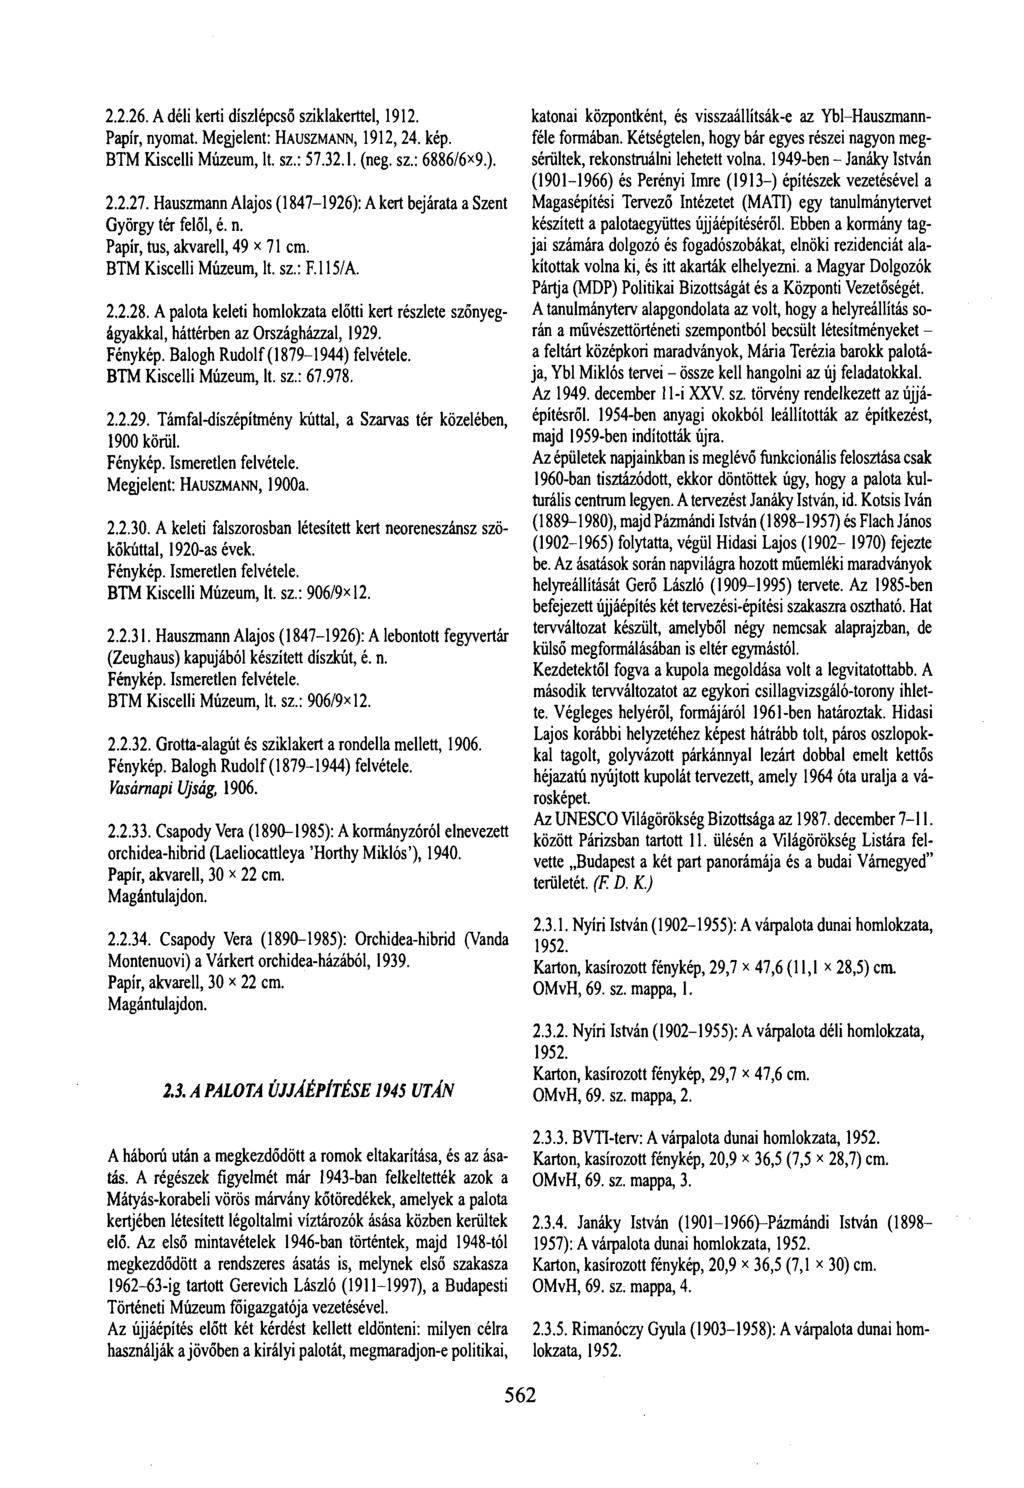 2.2.26. A déli kerti díszlépcső sziklakerttel, 1912. Papír, nyomat. Megjelent: HAUSZMANN, 1912,24. kép. (neg. sz.: 6886/6x9.). 2.2.27.